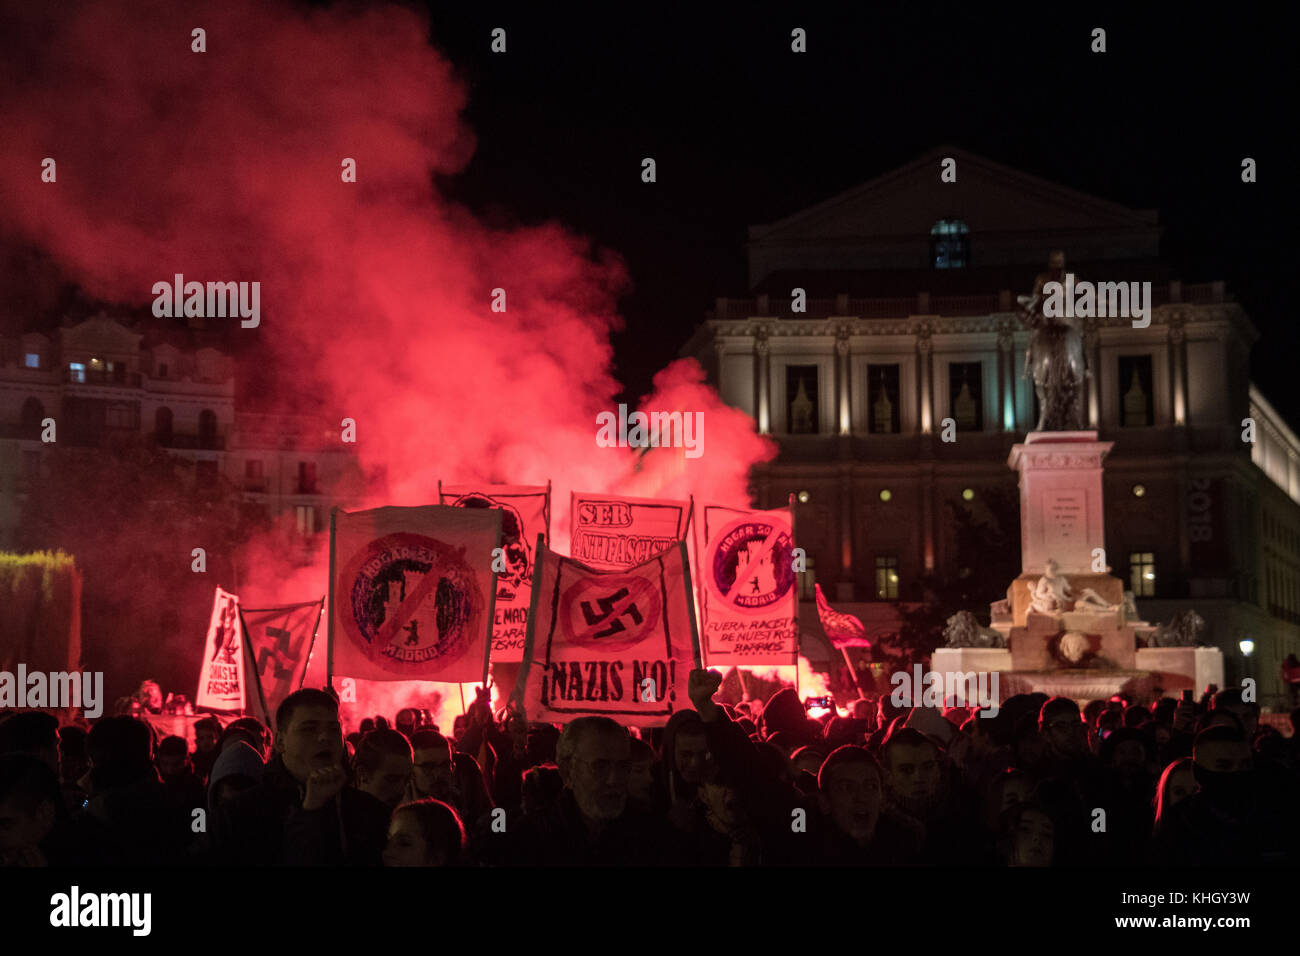 Madrid, Spagna. Xviii Nov, 2017. Centinaia che protestavano contro il fascismo sotto lo slogan "Il Fascismo avanza se non è combattuto' a Madrid, Spagna. Credito: Marcos del Mazo/Alamy Live News Foto Stock